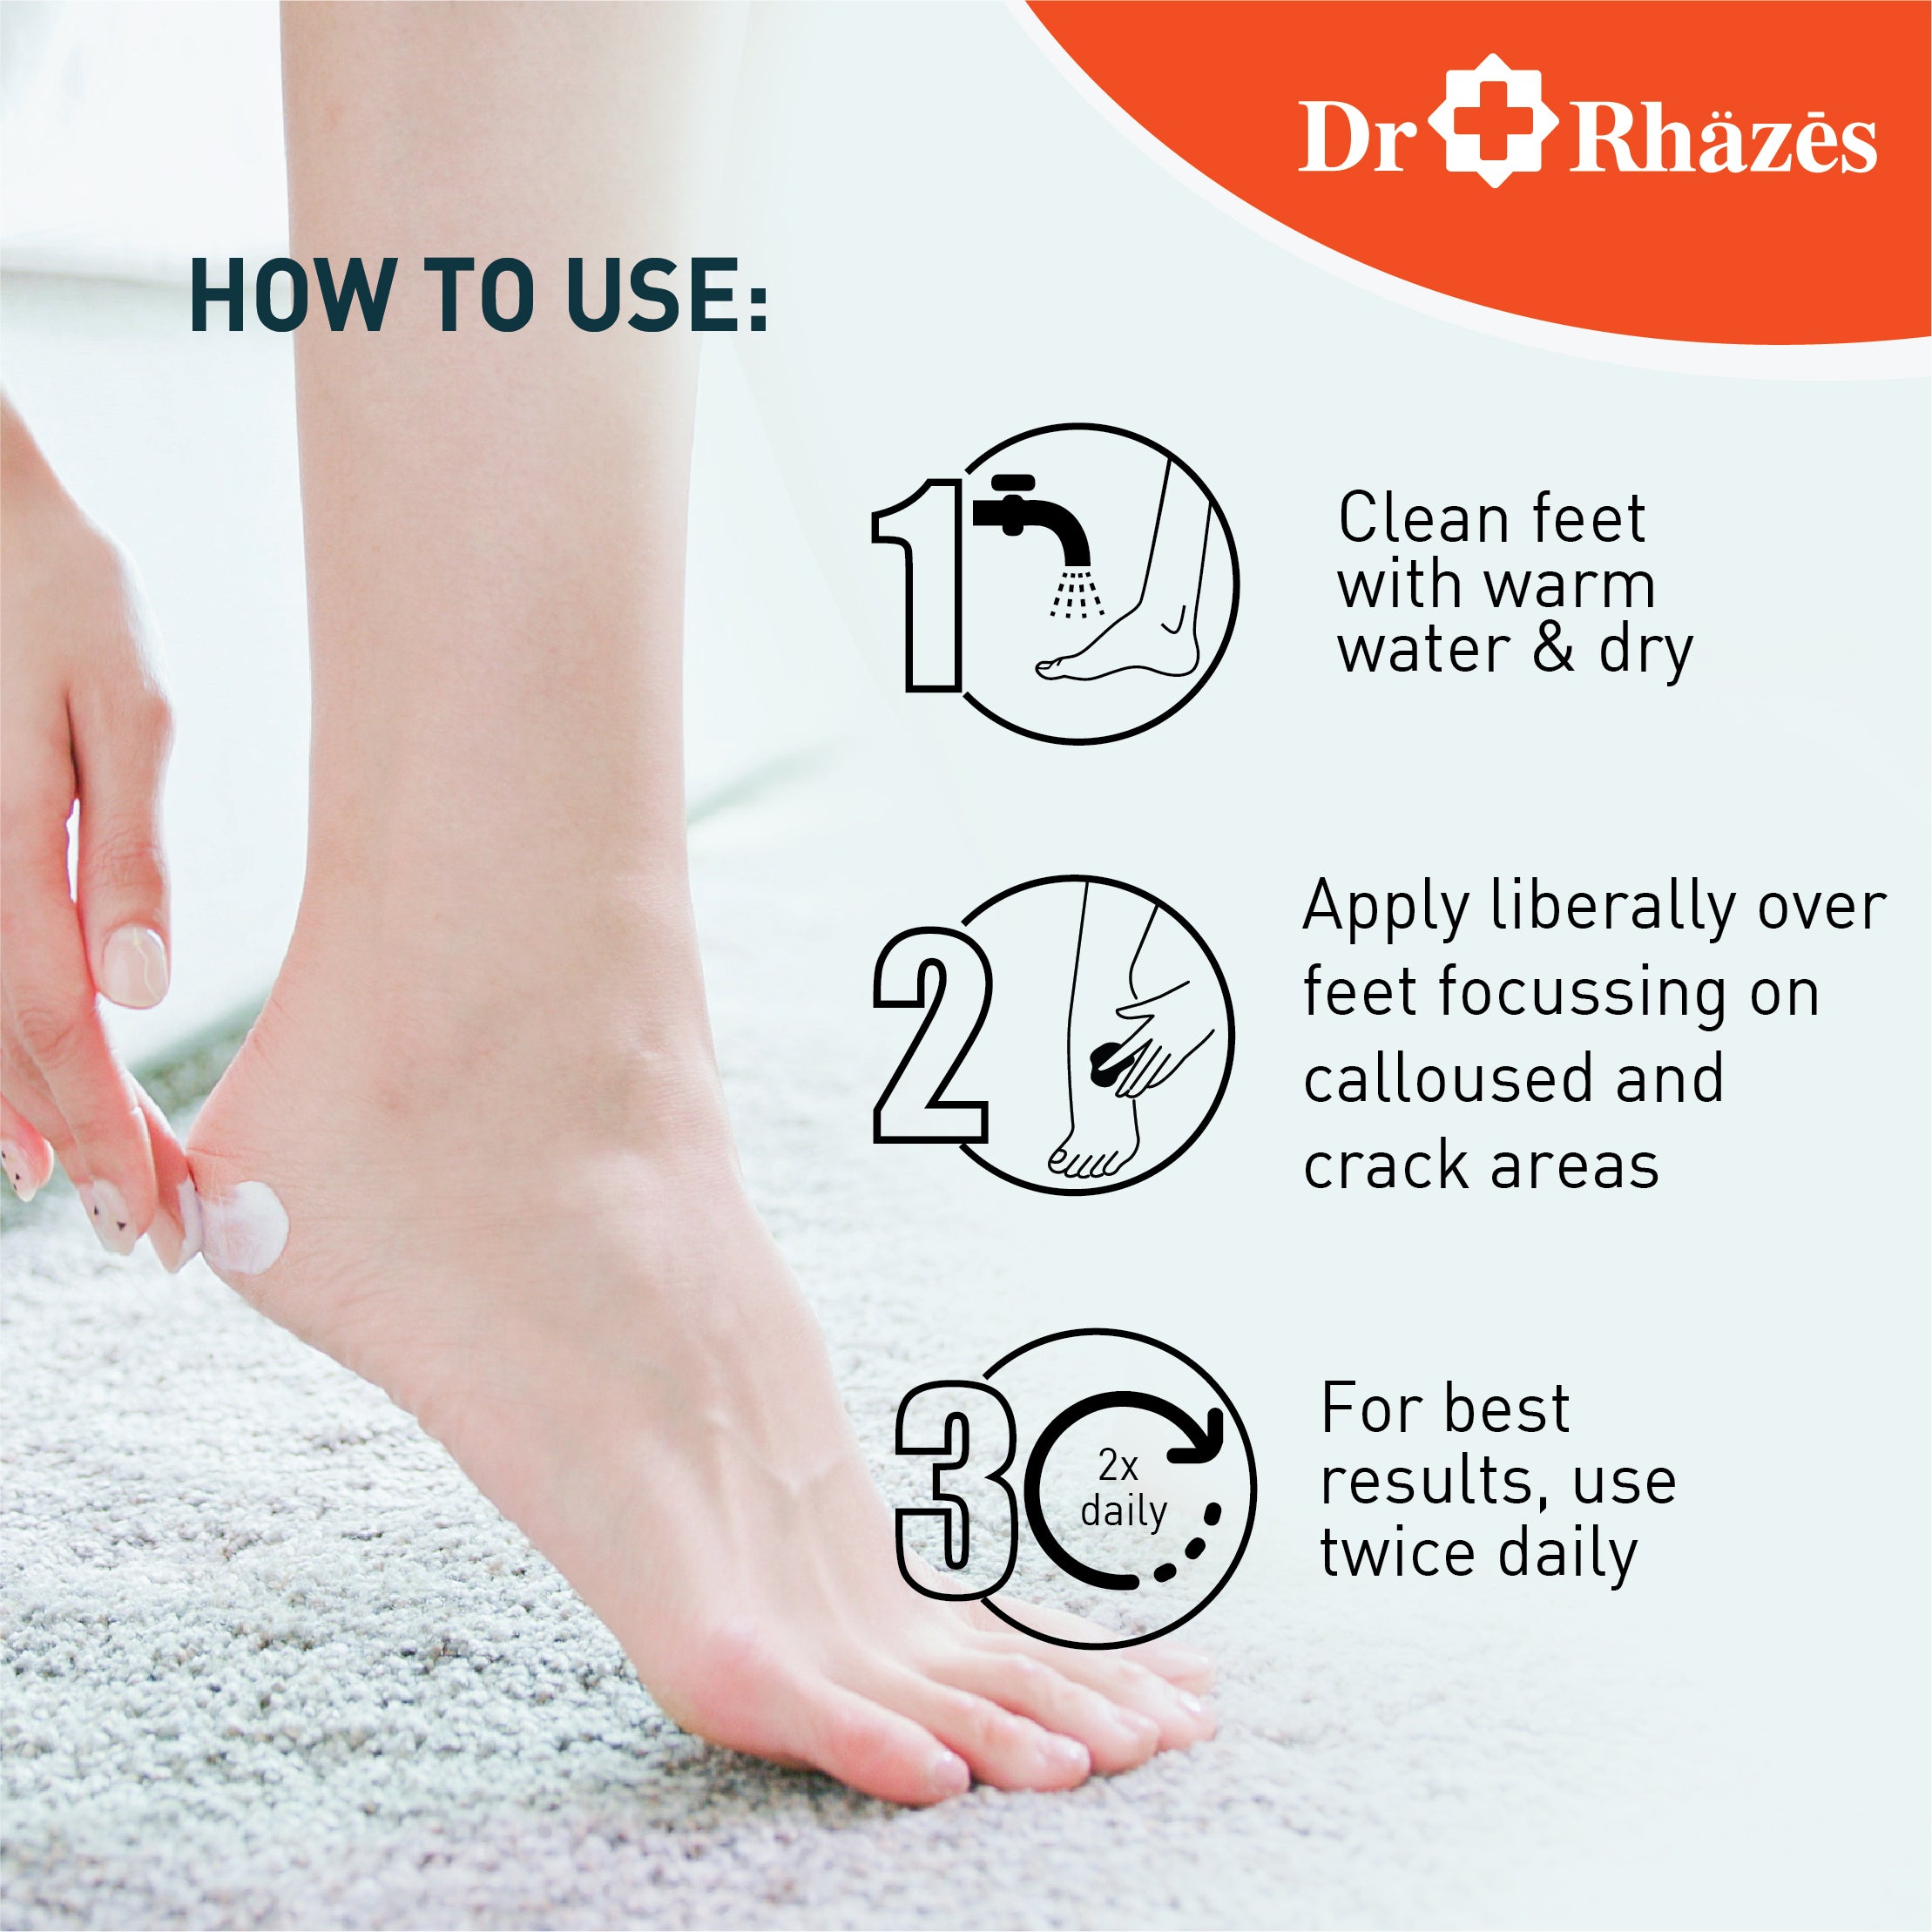 Dr Rhazes Foot Cream - Heals Cracked Heels (50g)